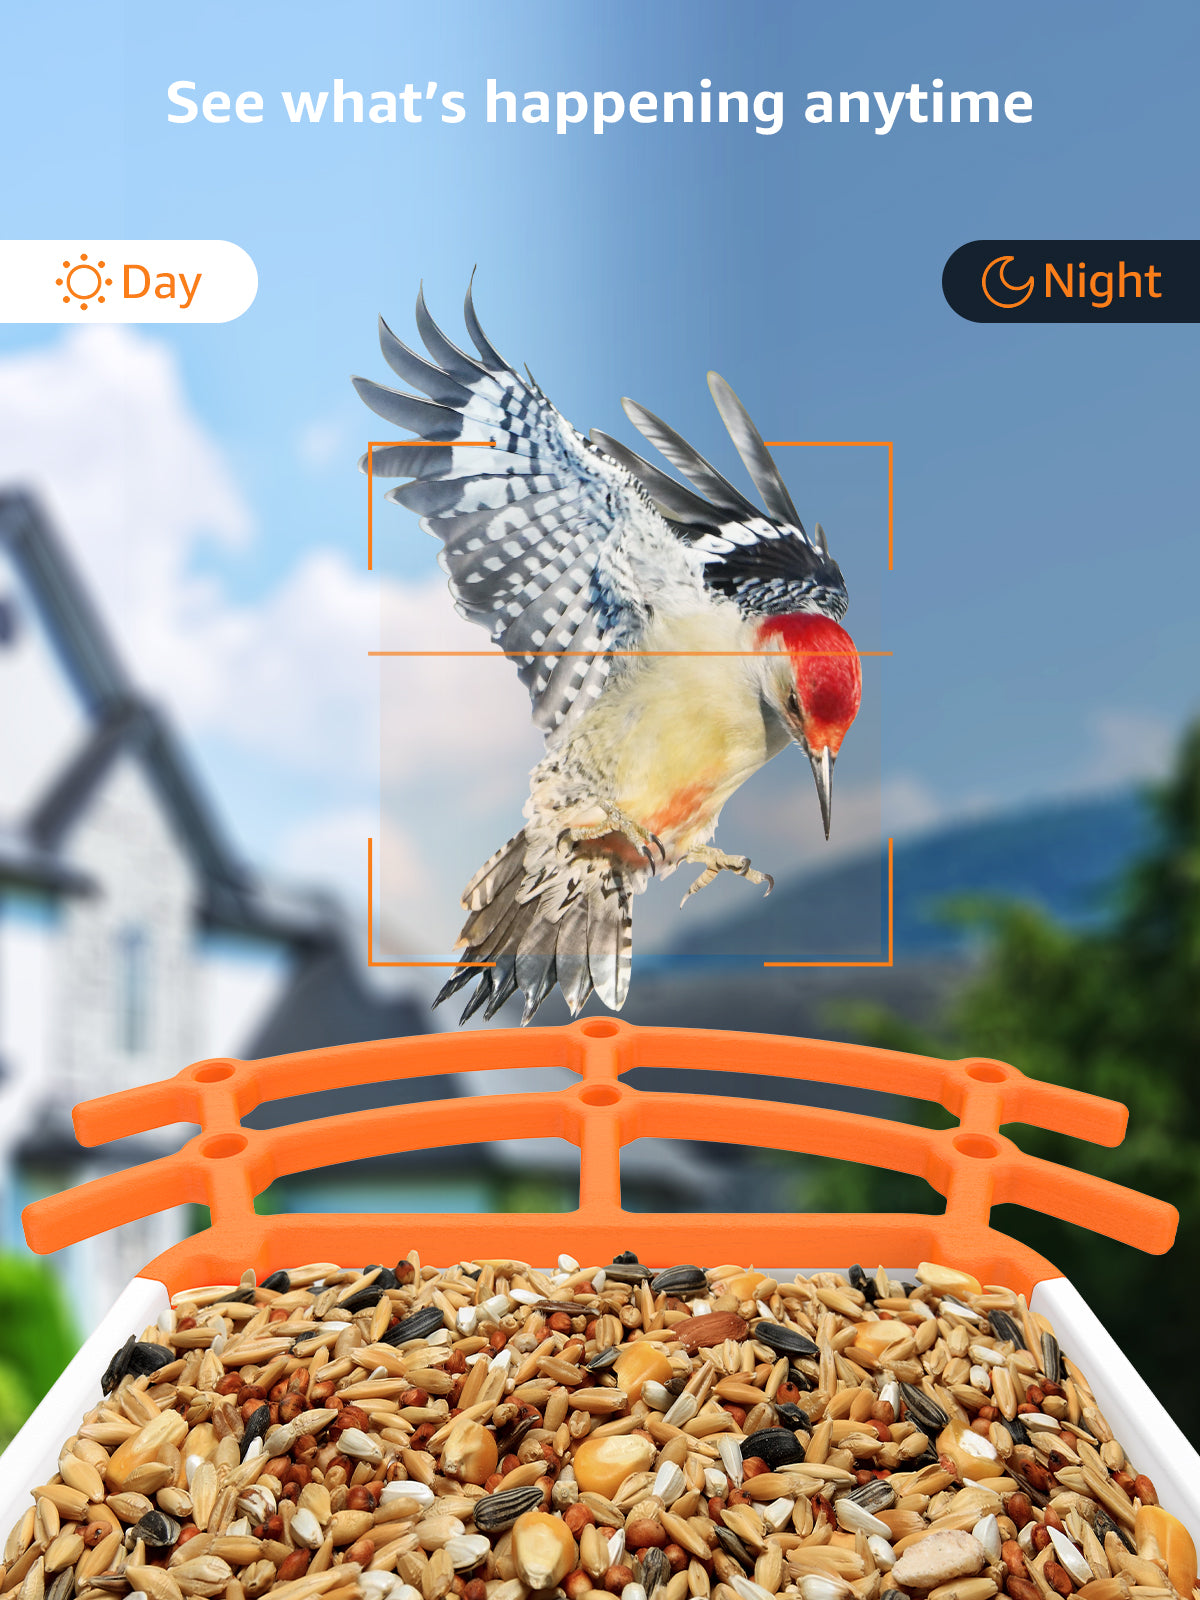 Mangeoire à oiseaux BOME - Caméra et Audio - Mangeoire à oiseaux Smart